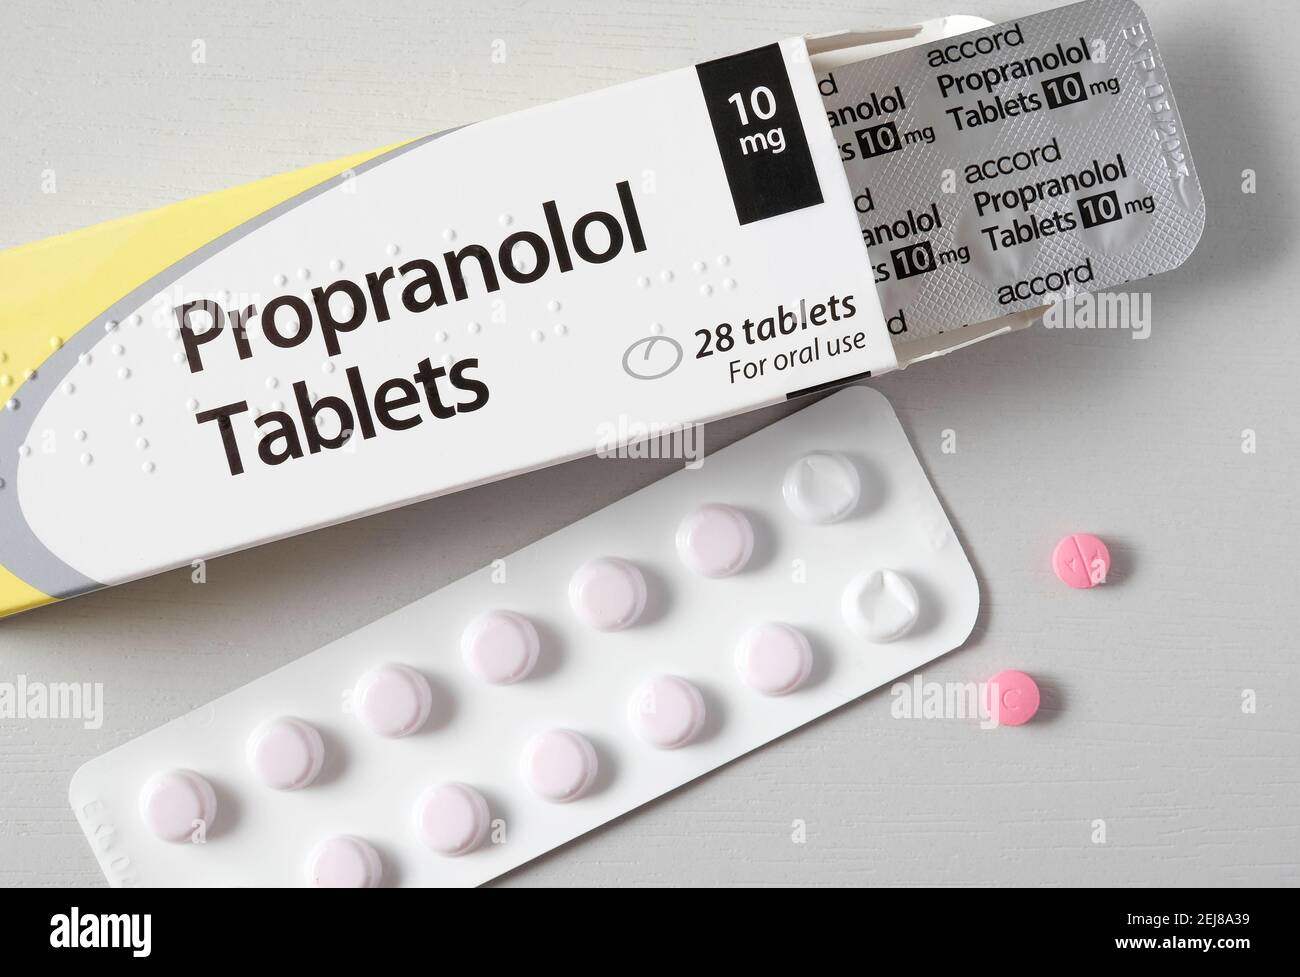 Propranolol hoher Blutdruck Droge Tabletten. Dieses Medikament, ein  Beta-Adrenoceptor blockieren Droge (oder Beta-blocker) wird verwendet, um  den Blutdruck zu senken, korrigieren Stockfotografie - Alamy